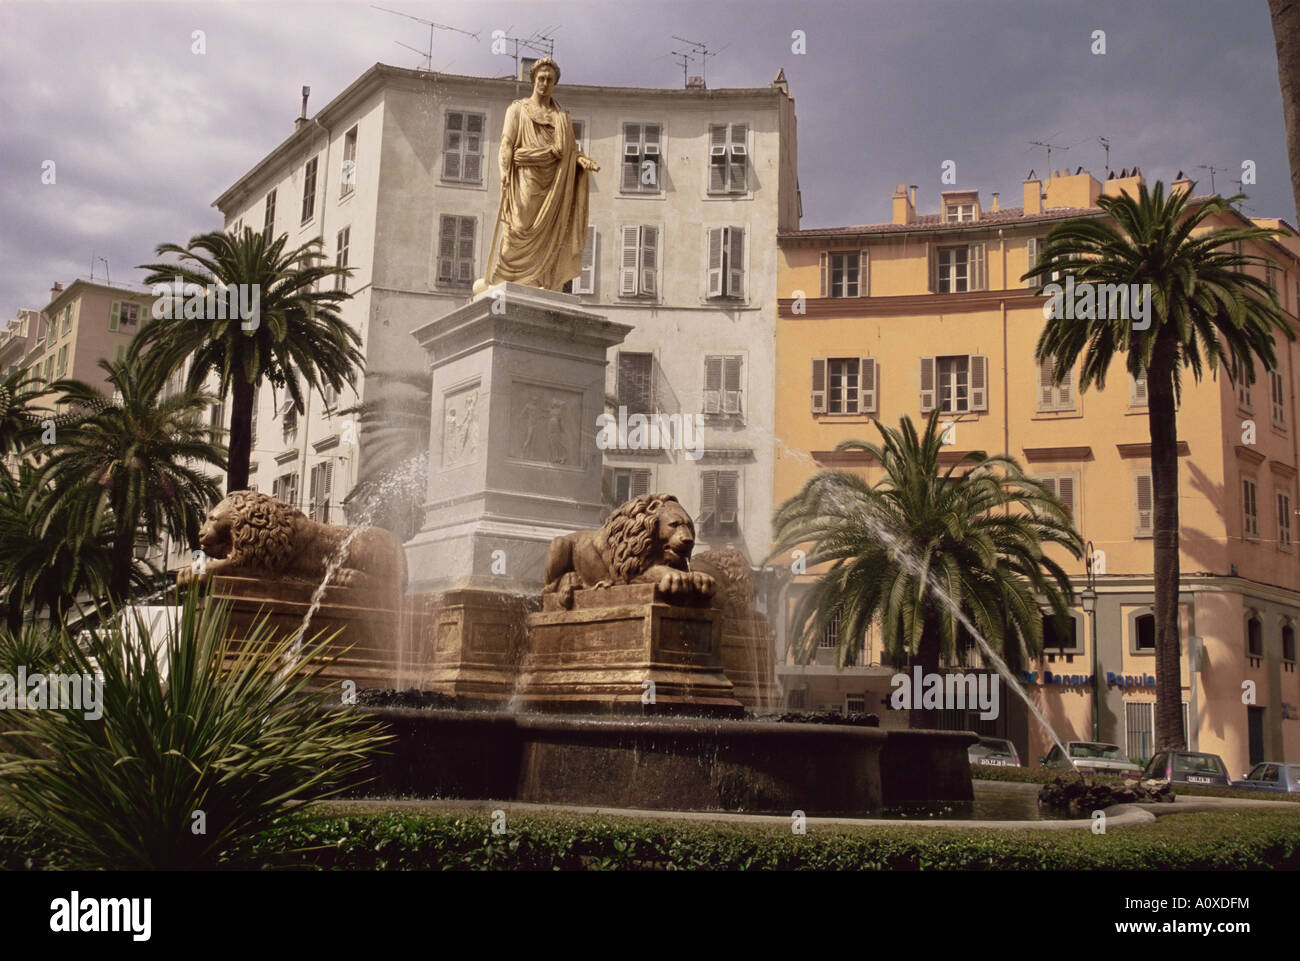 Statue de Napoléon en tant que Premier Consul Place Foch Ajaccio Corse France Europe Banque D'Images